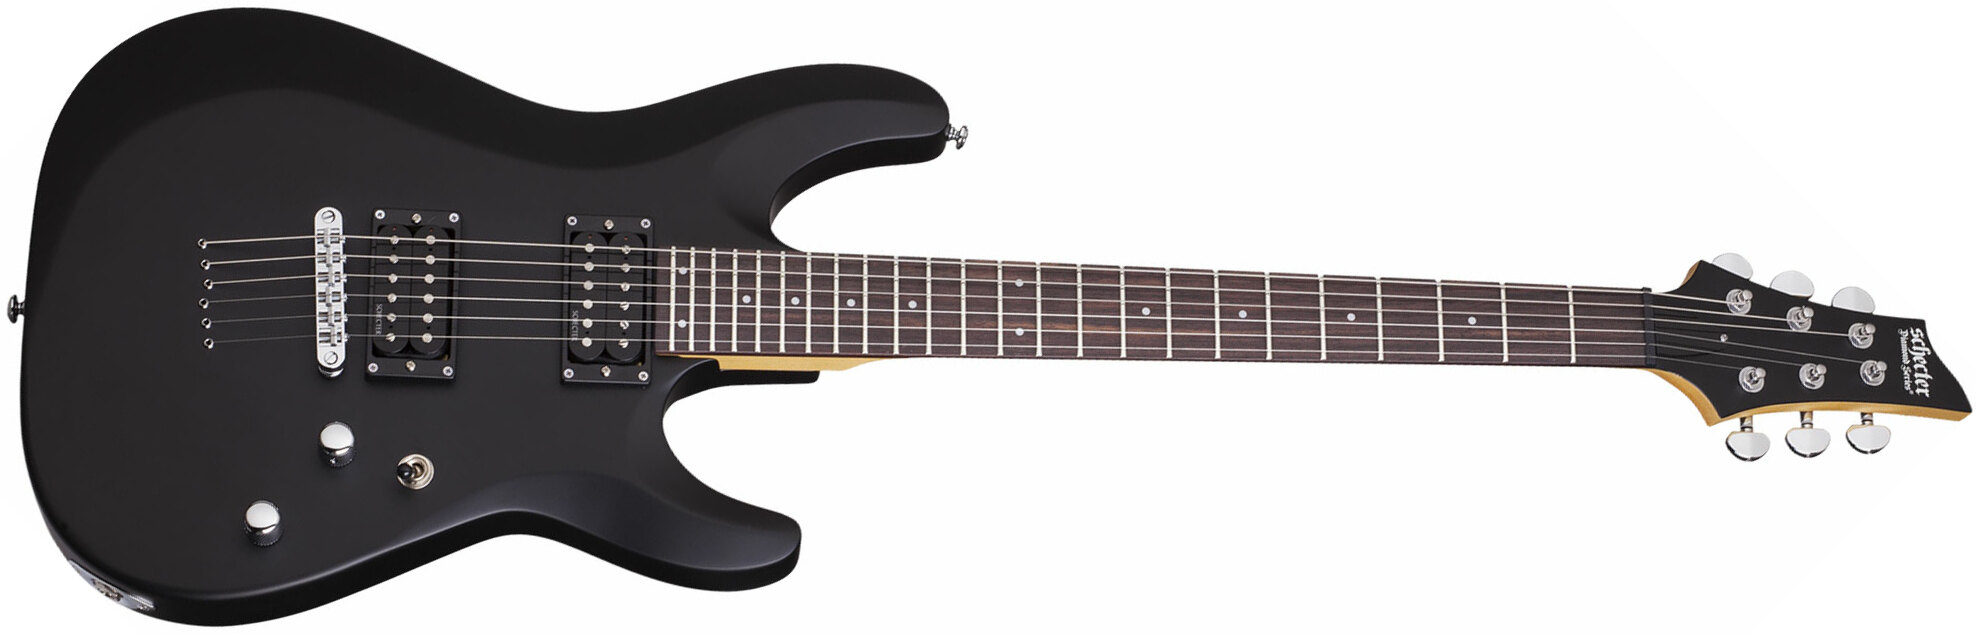 Schecter C-6 Deluxe 2h Ht Rw - Satin Black - E-Gitarre in Str-Form - Main picture